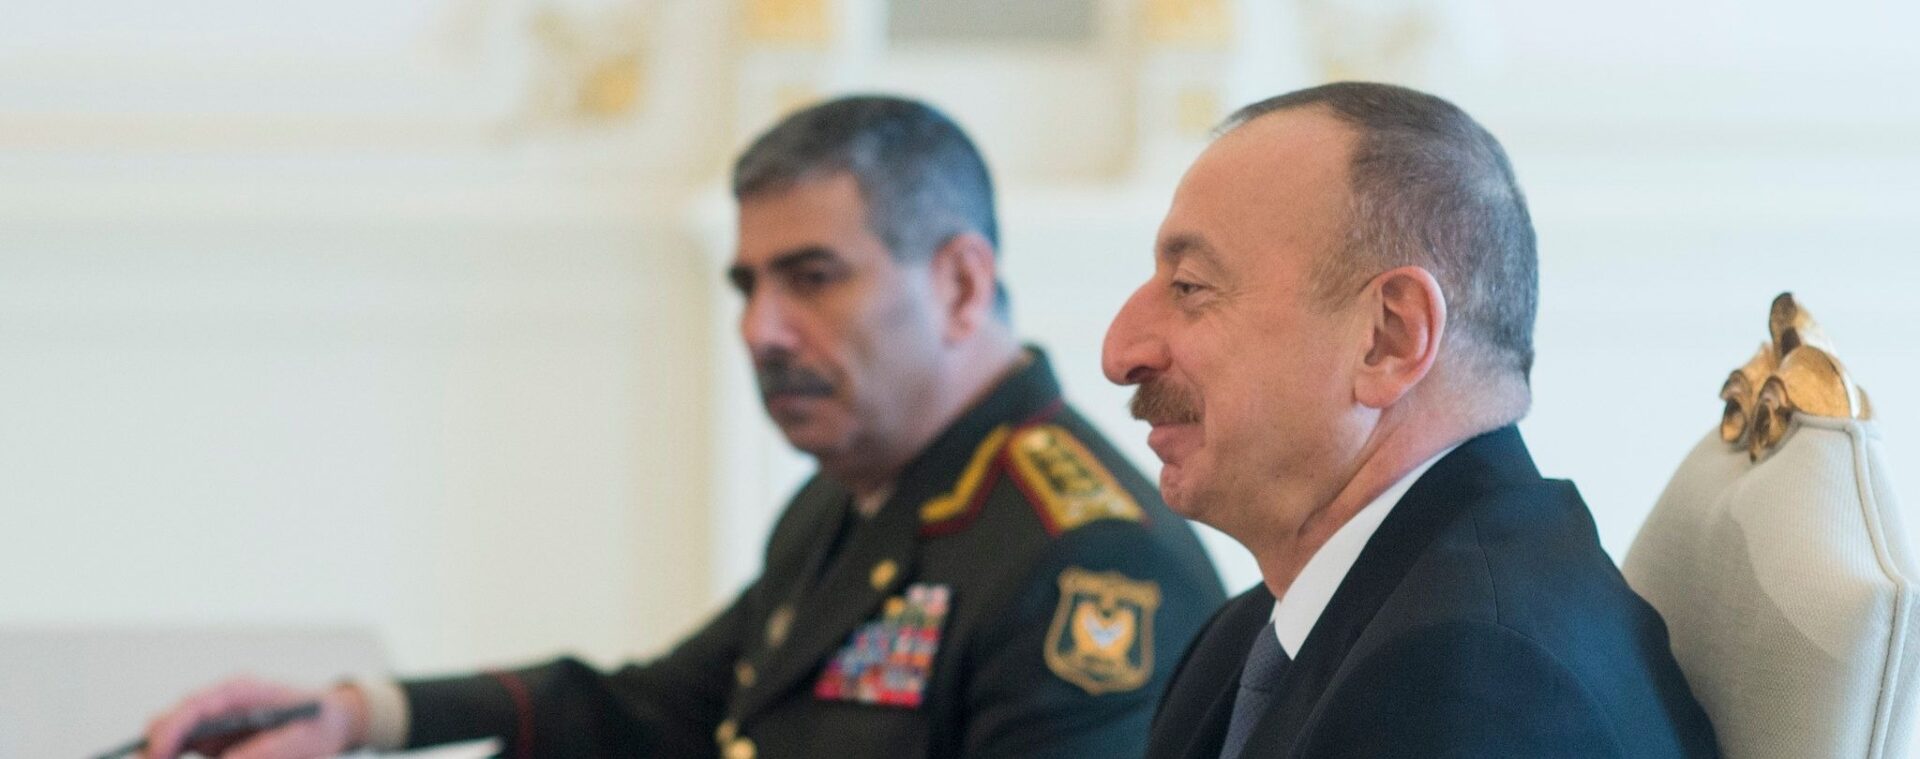 Ilham Aliyev est président de l'Azerbaïdjan depuis 2003 | © Chairman of the Joint Chiefs of Staff/Flickr/CC BY 2.0